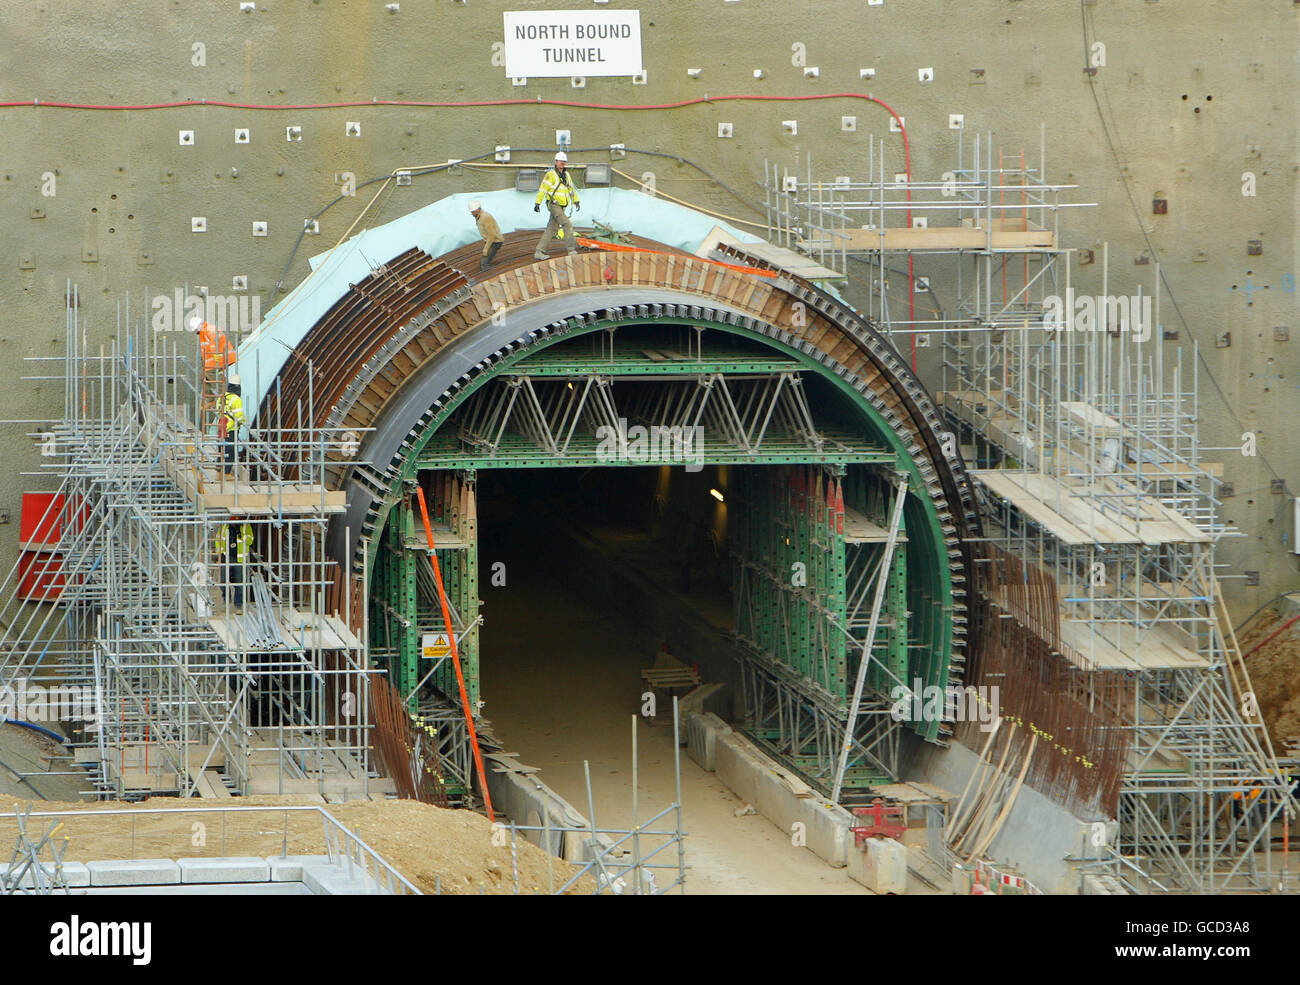 Vue générale de l'extrémité sud des tunnels routiers en construction à Hindhead, dans le Surrey. Le projet de tunnel A3 permettra de compléter la liaison à double chaussée entre Londres et Portsmouth et d'éliminer une importante source de congestion autour du carrefour A3/A287 à Hindhead. La nouvelle route sera longue de 6,4miles et comprend 1,1miles de tunnels forés jumeaux sous le Devil's Punch Bowl, un site d'intérêt scientifique spécial. Banque D'Images